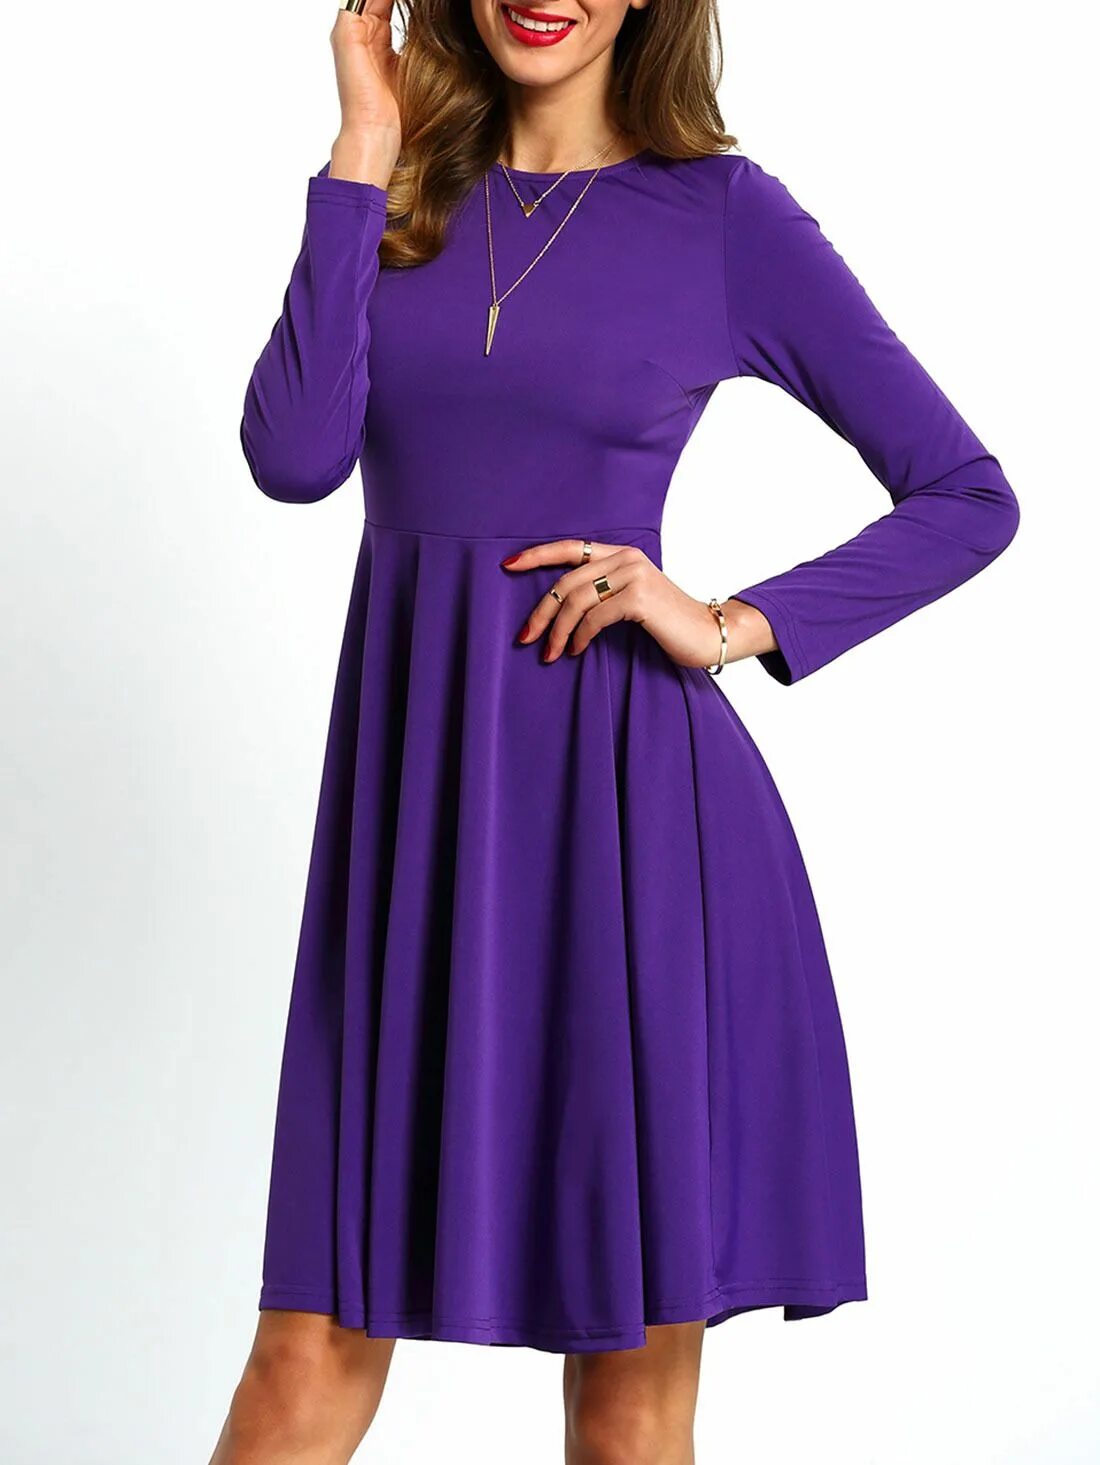 Платье фиолетовое. Сиреневое платье с длинным рукавом. Фиолетовое платье с рукавами. Фиолетовое платье с длинным рукавом.